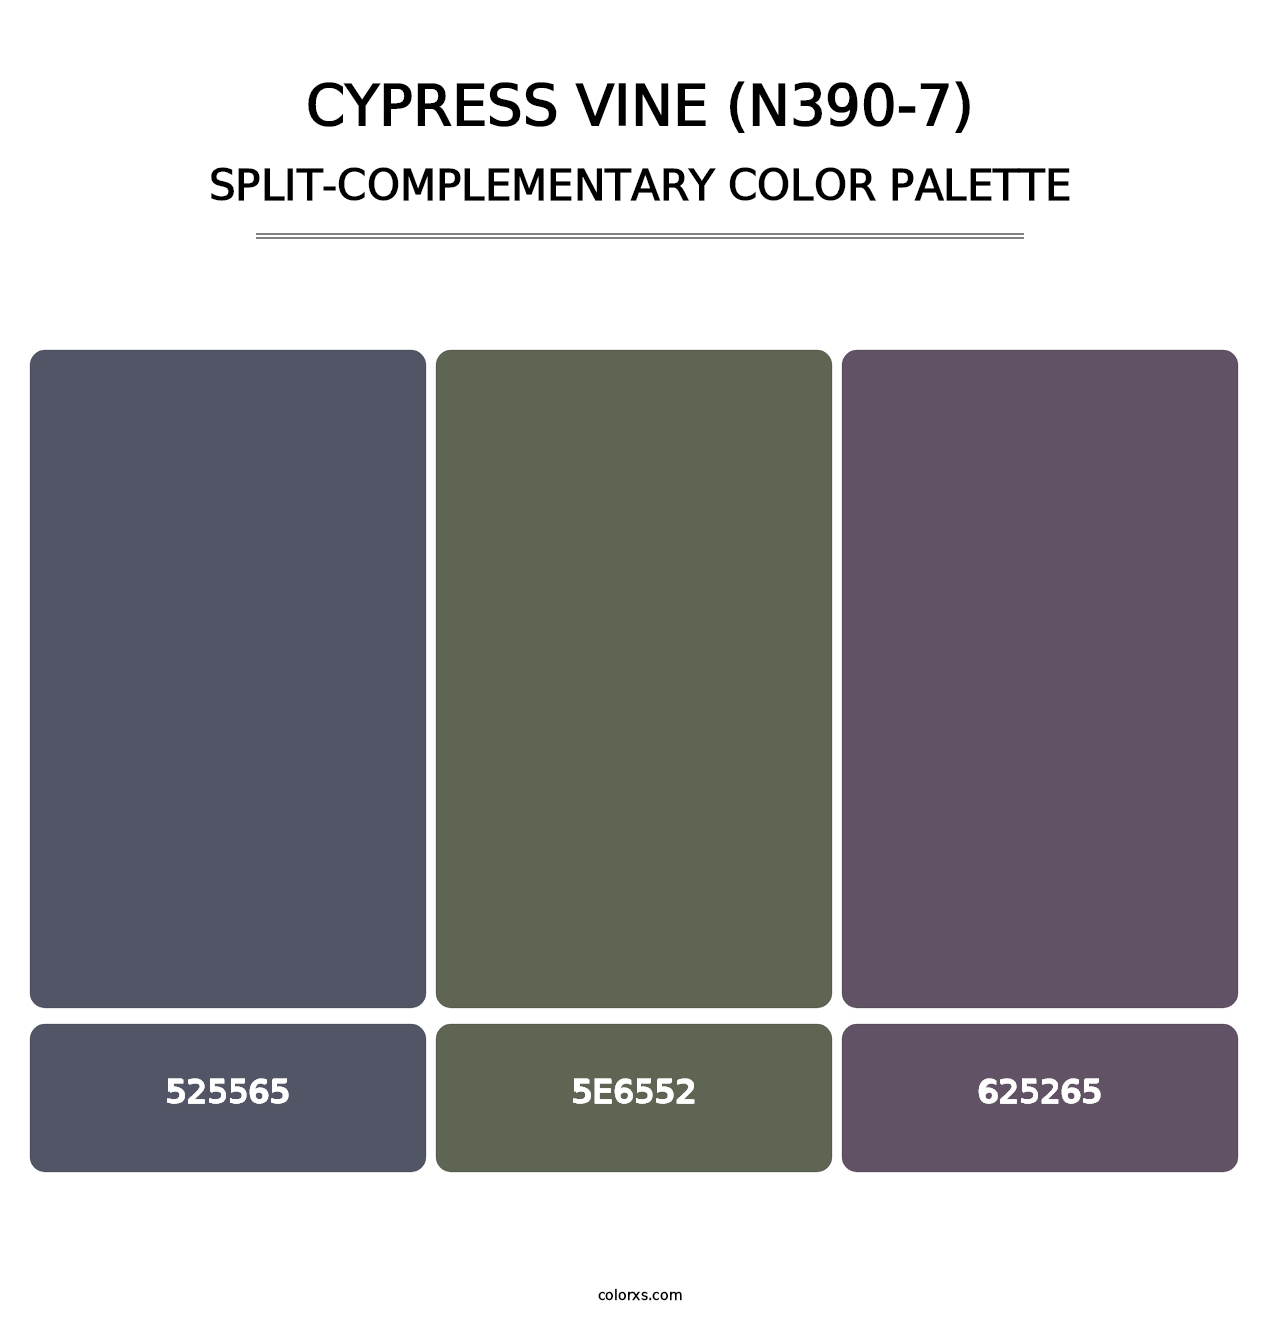 Cypress Vine (N390-7) - Split-Complementary Color Palette